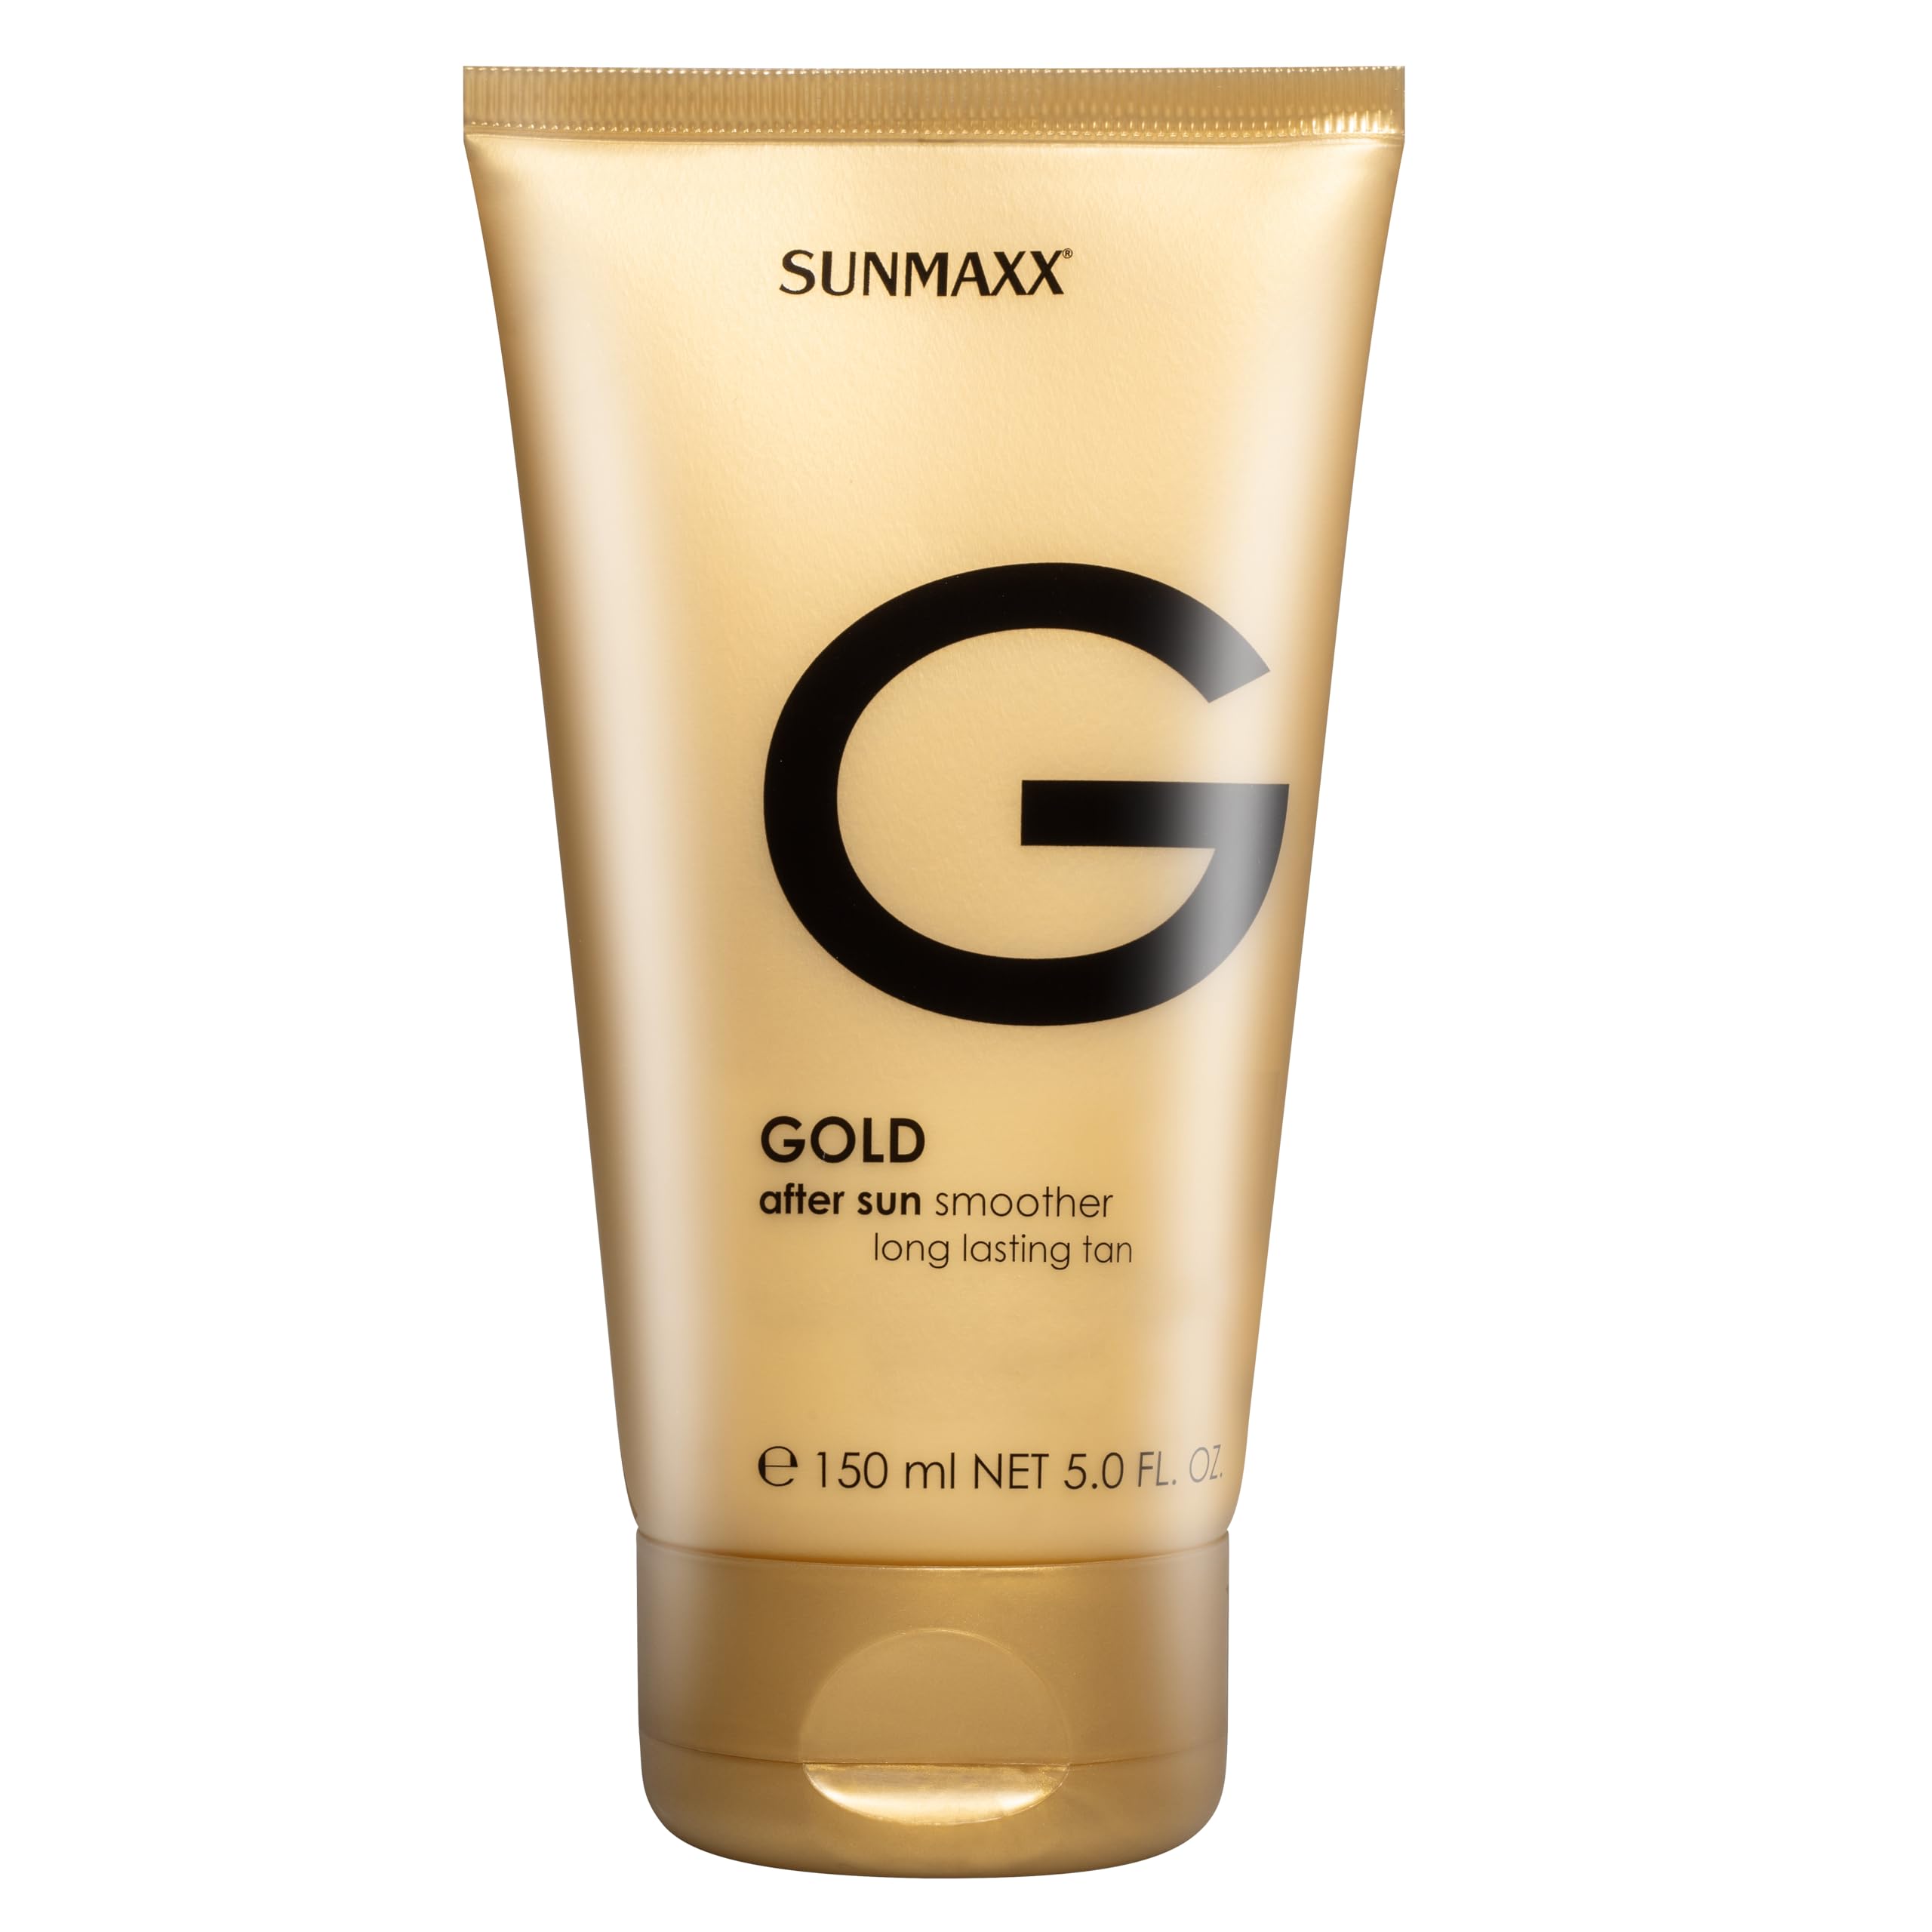 SUNMAXX GOLD after sun smoother long lasting tan | 150 ml | Nach der Besonnung auftragen I Anti-Stress Wirkung I Intensive Feuchtigkeit I Alltägliche Pflege I Hochwertige Inhaltsstoffe